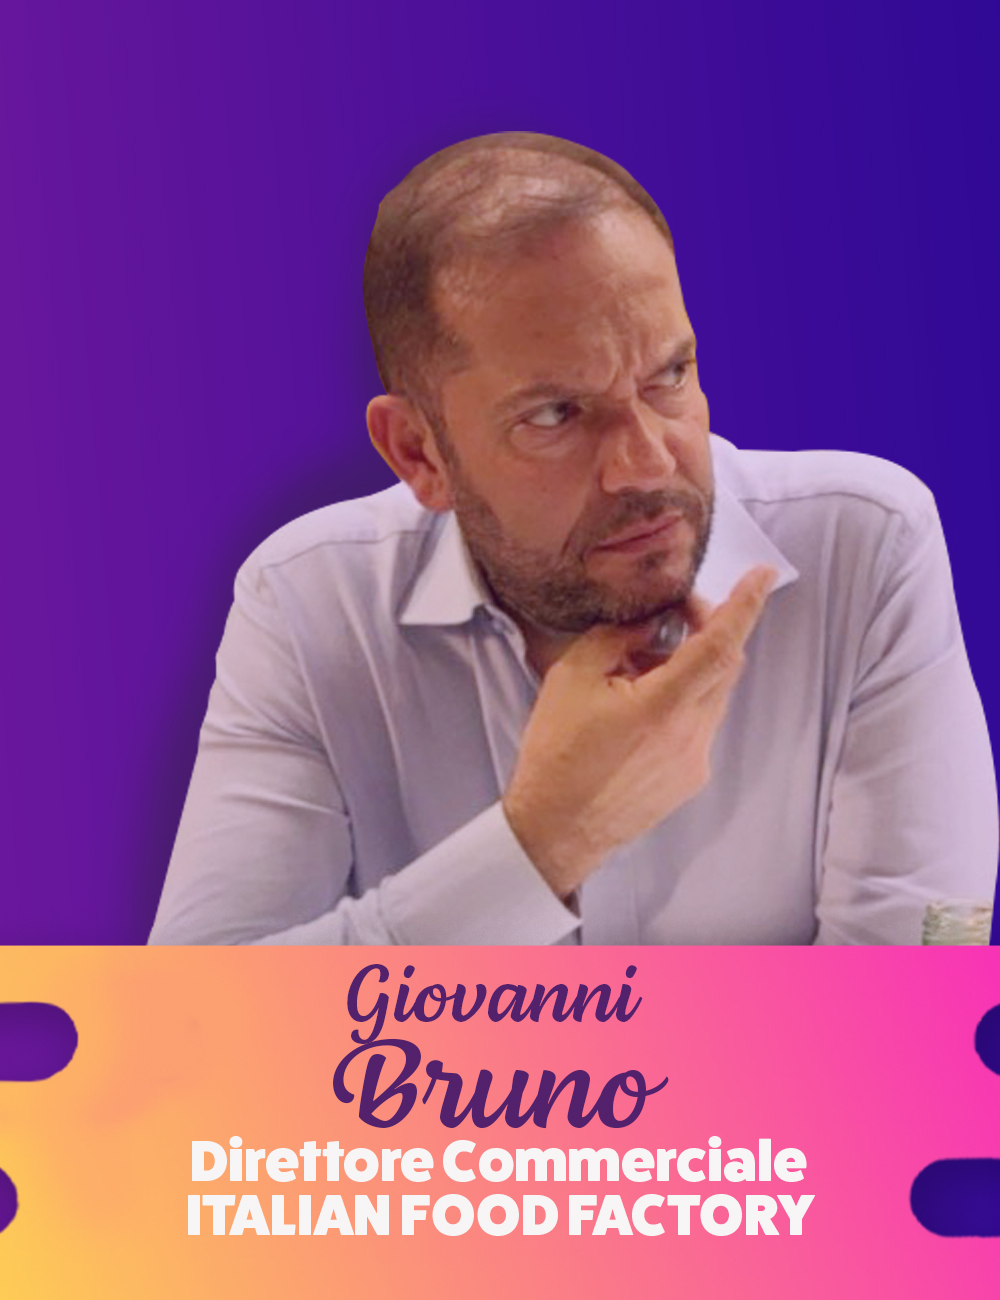 Giovanni Bruno Direttore Commerciale Italian Food Factory copia